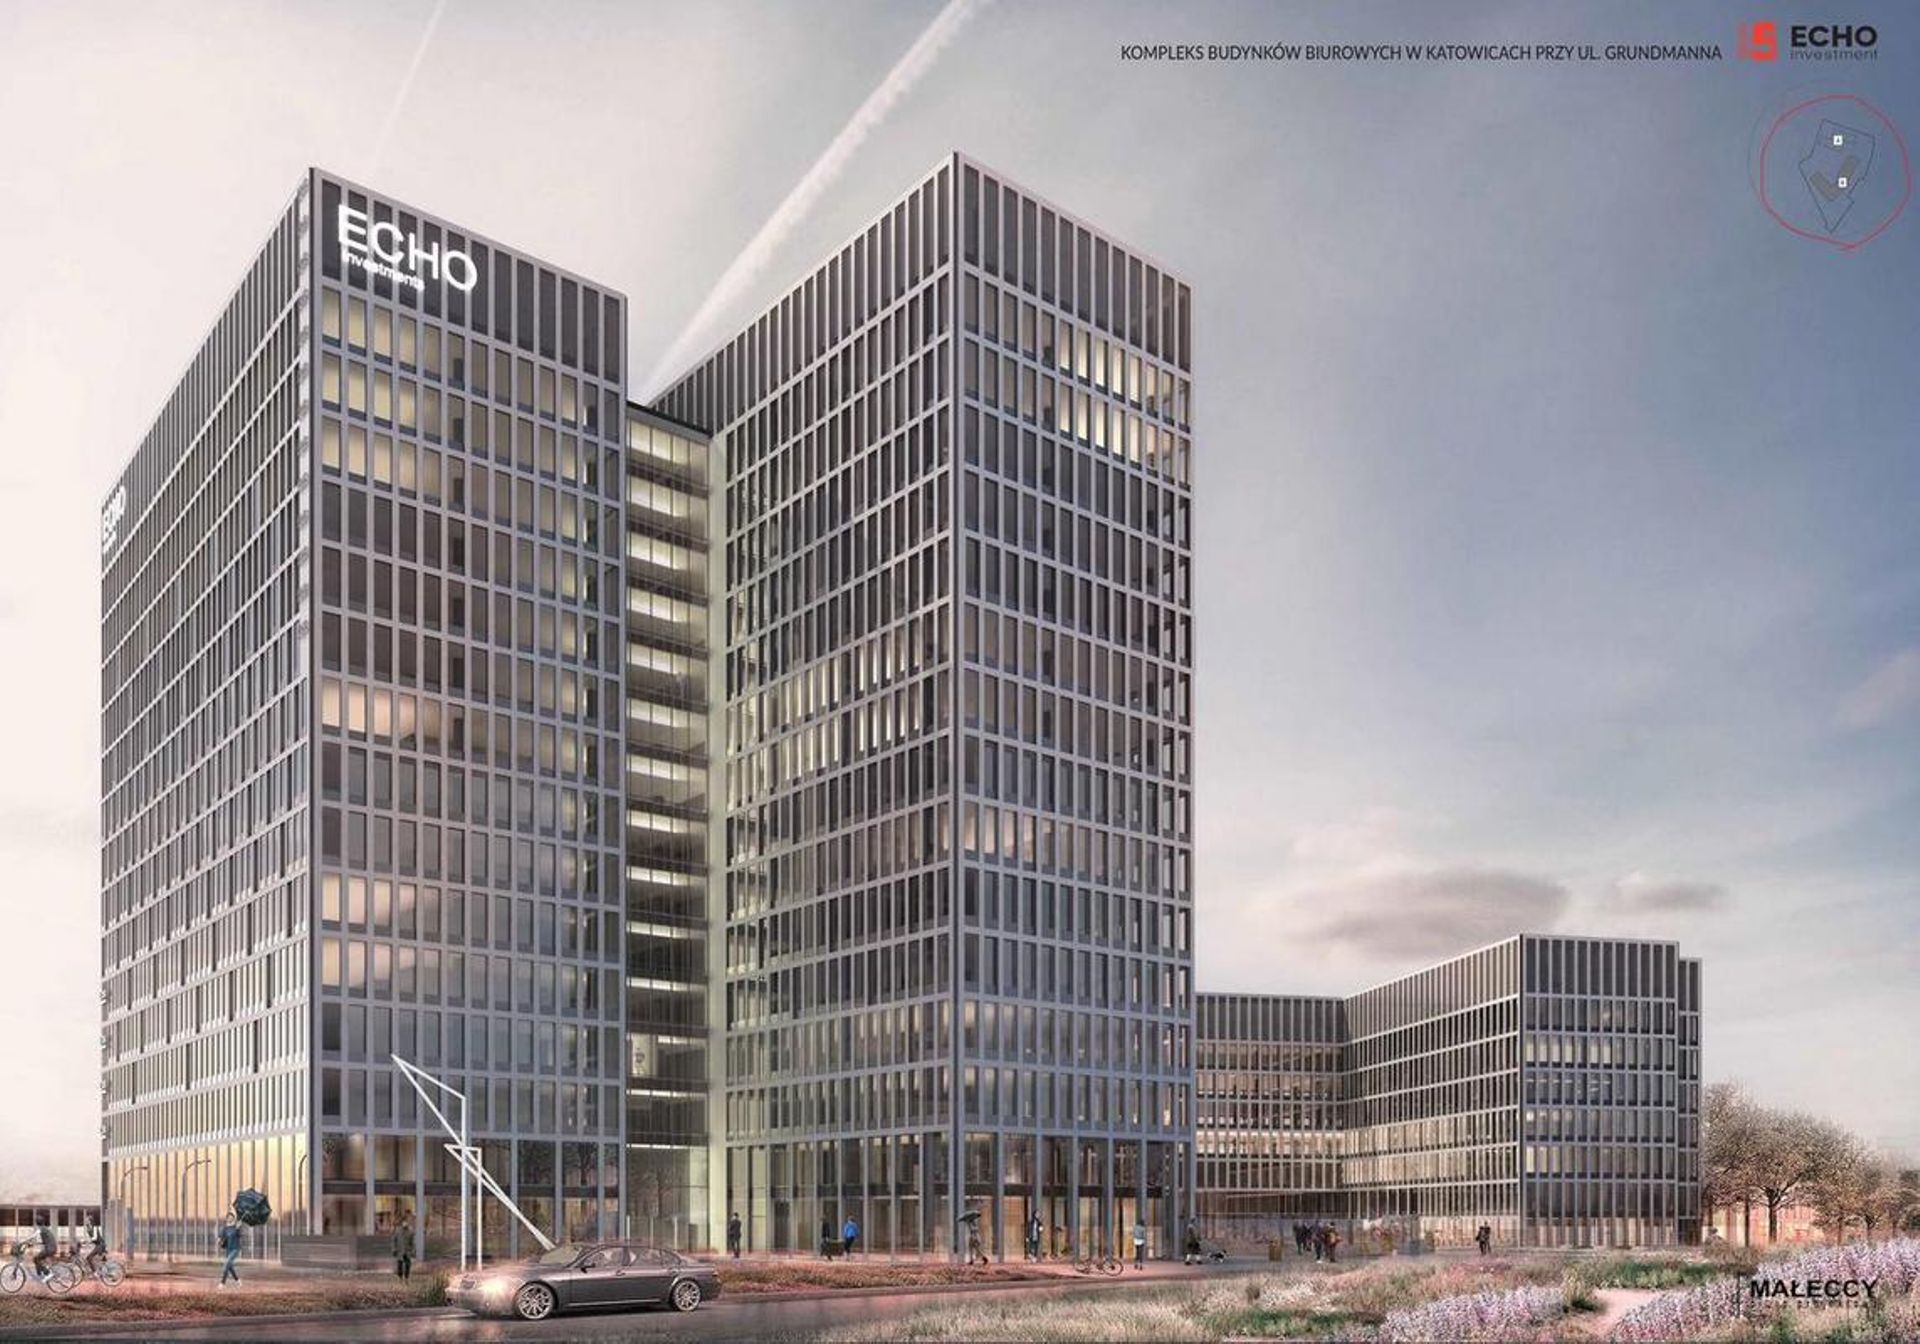  Echo Investment otrzymało 65 mln euro kredytu na budowę Face2Face w Katowicach